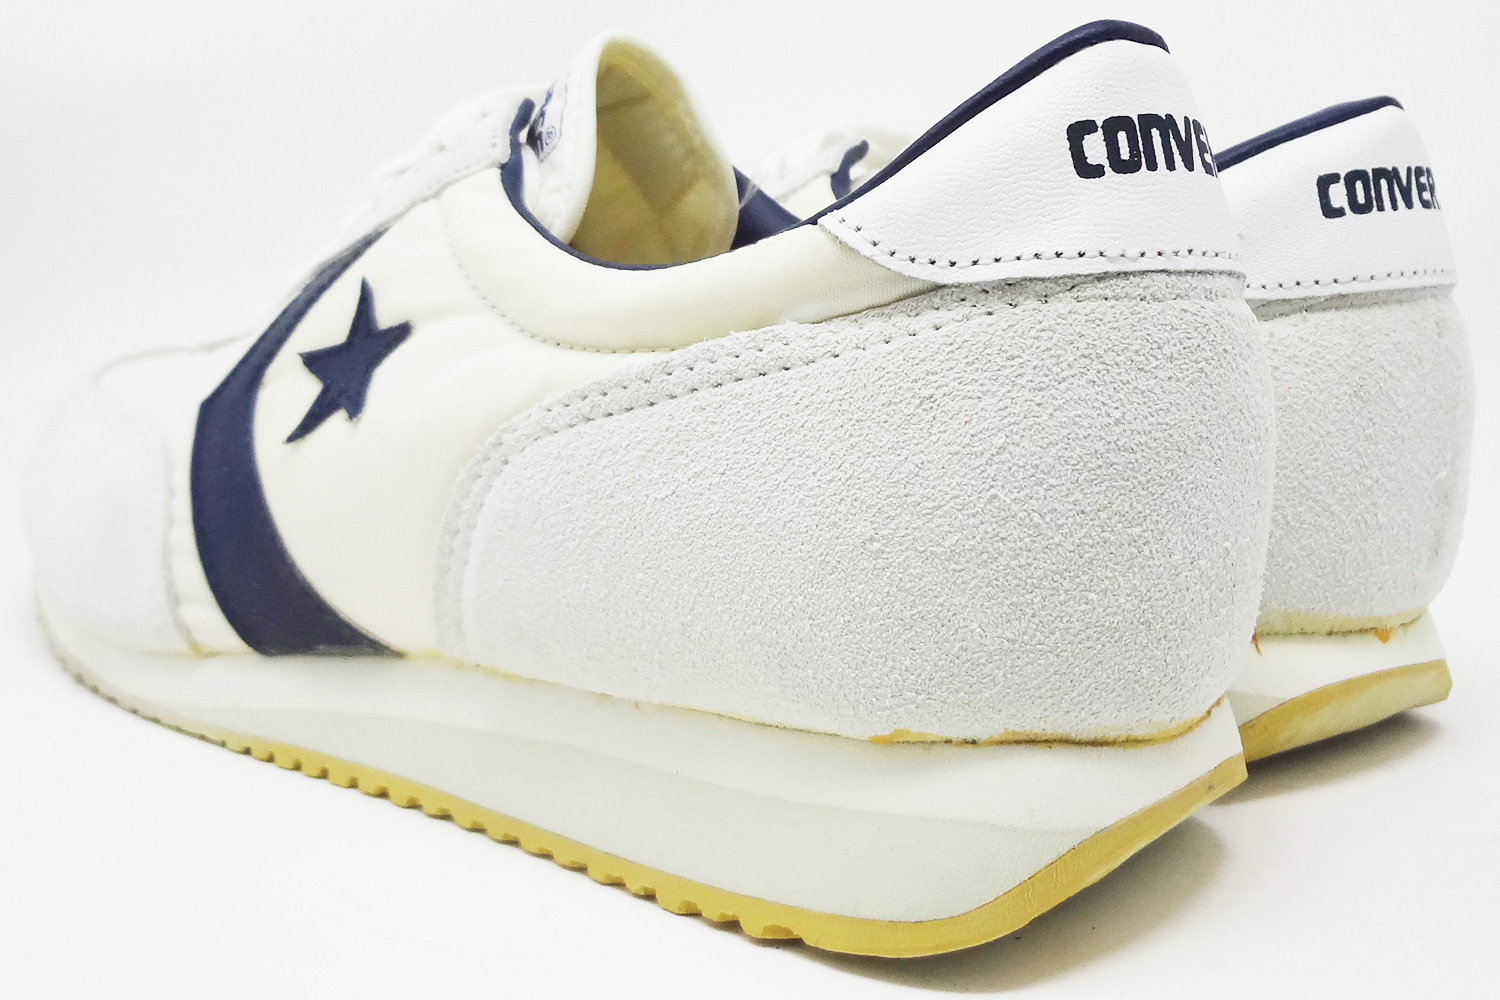 Converse Road Star 1980s vintage sneakers